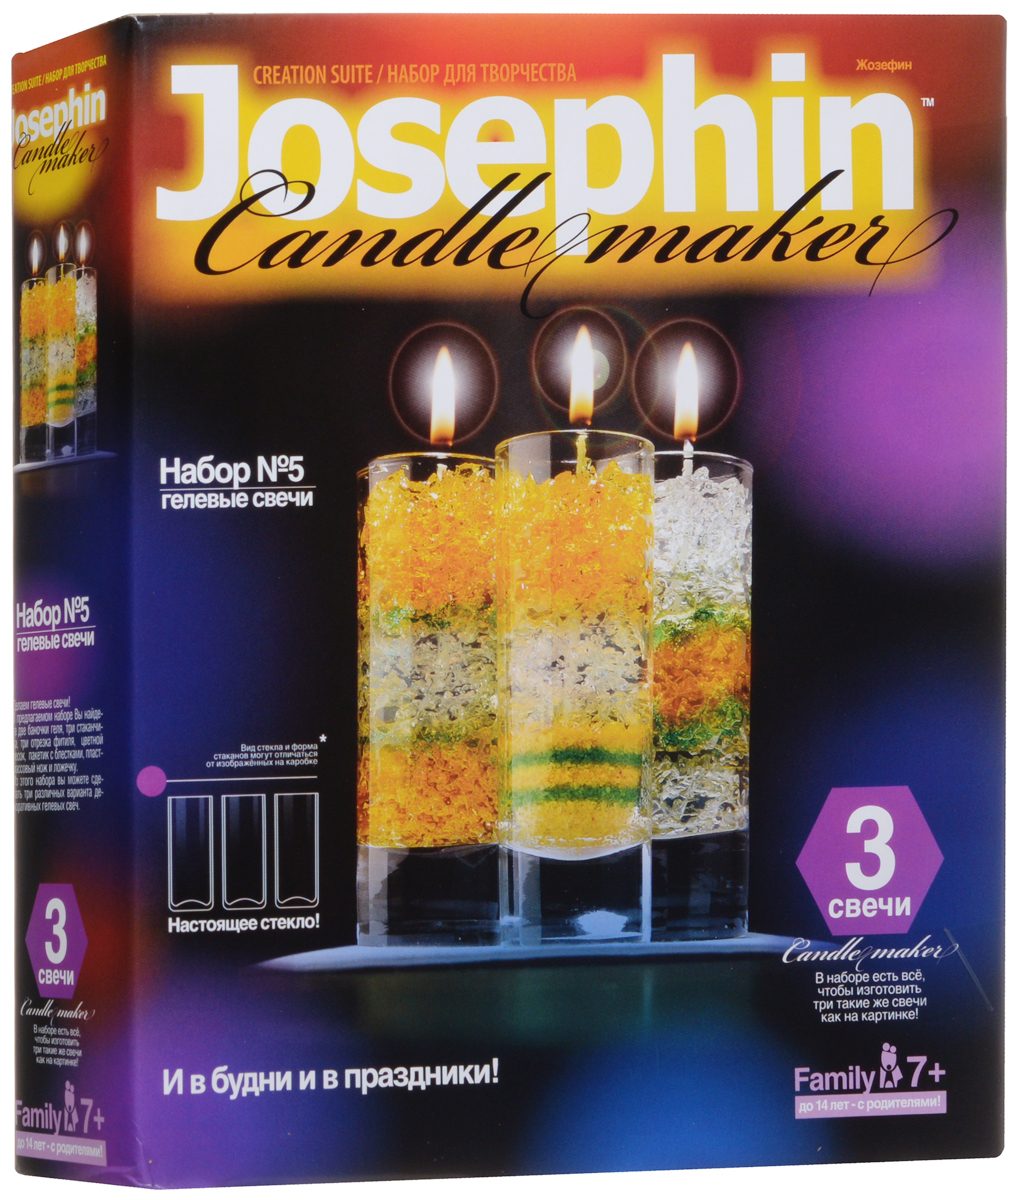 фото Josephin Набор для изготовления гелевых свечей №5